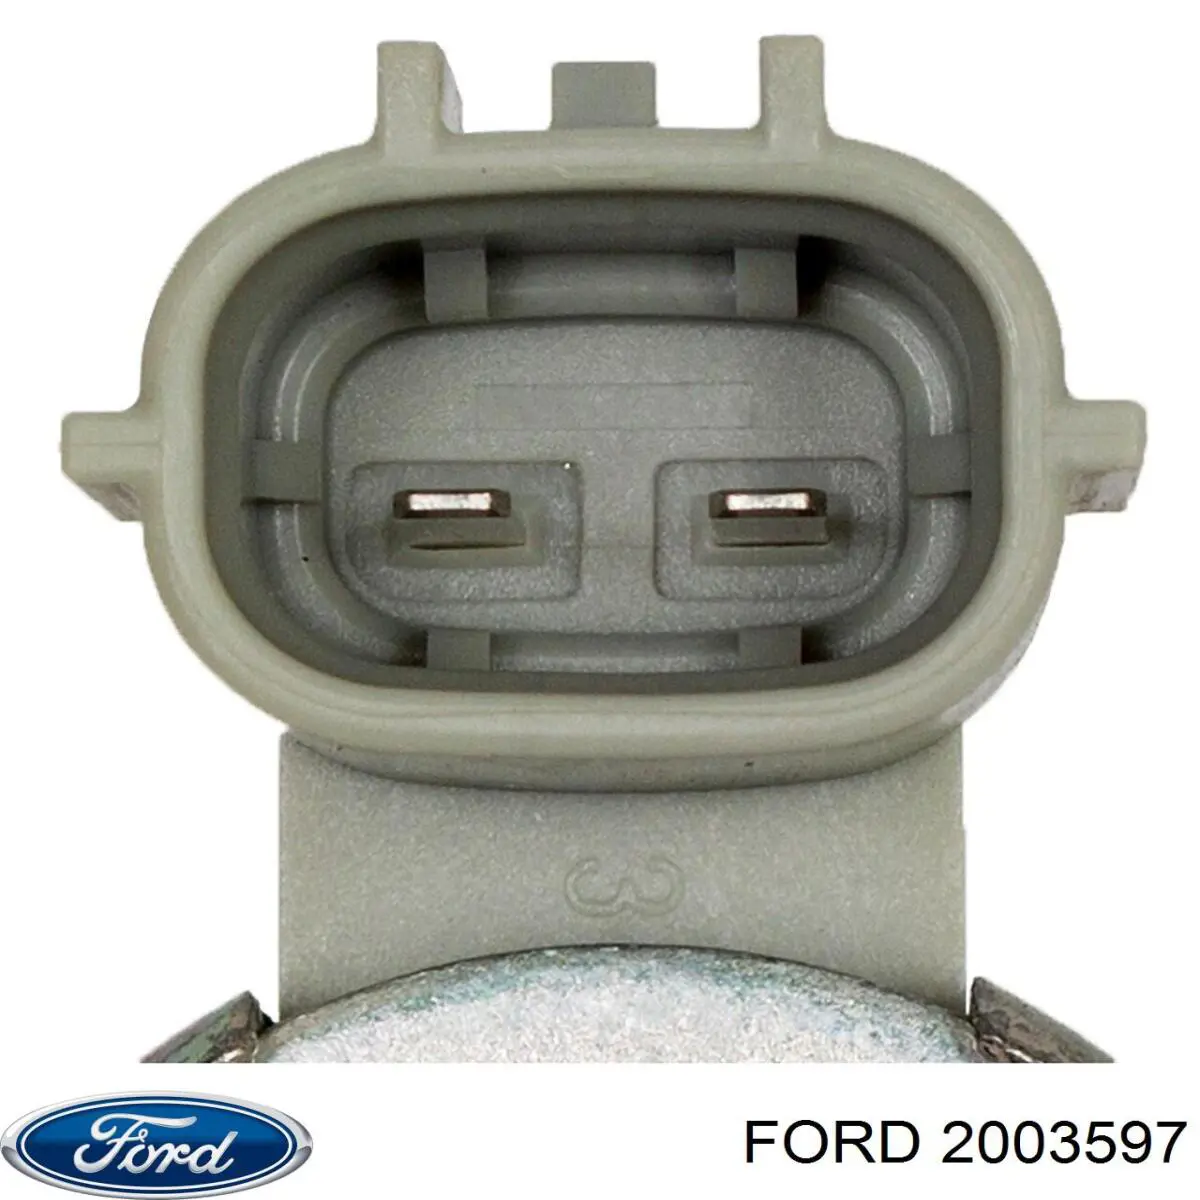 2003597 Ford válvula control, ajuste de levas